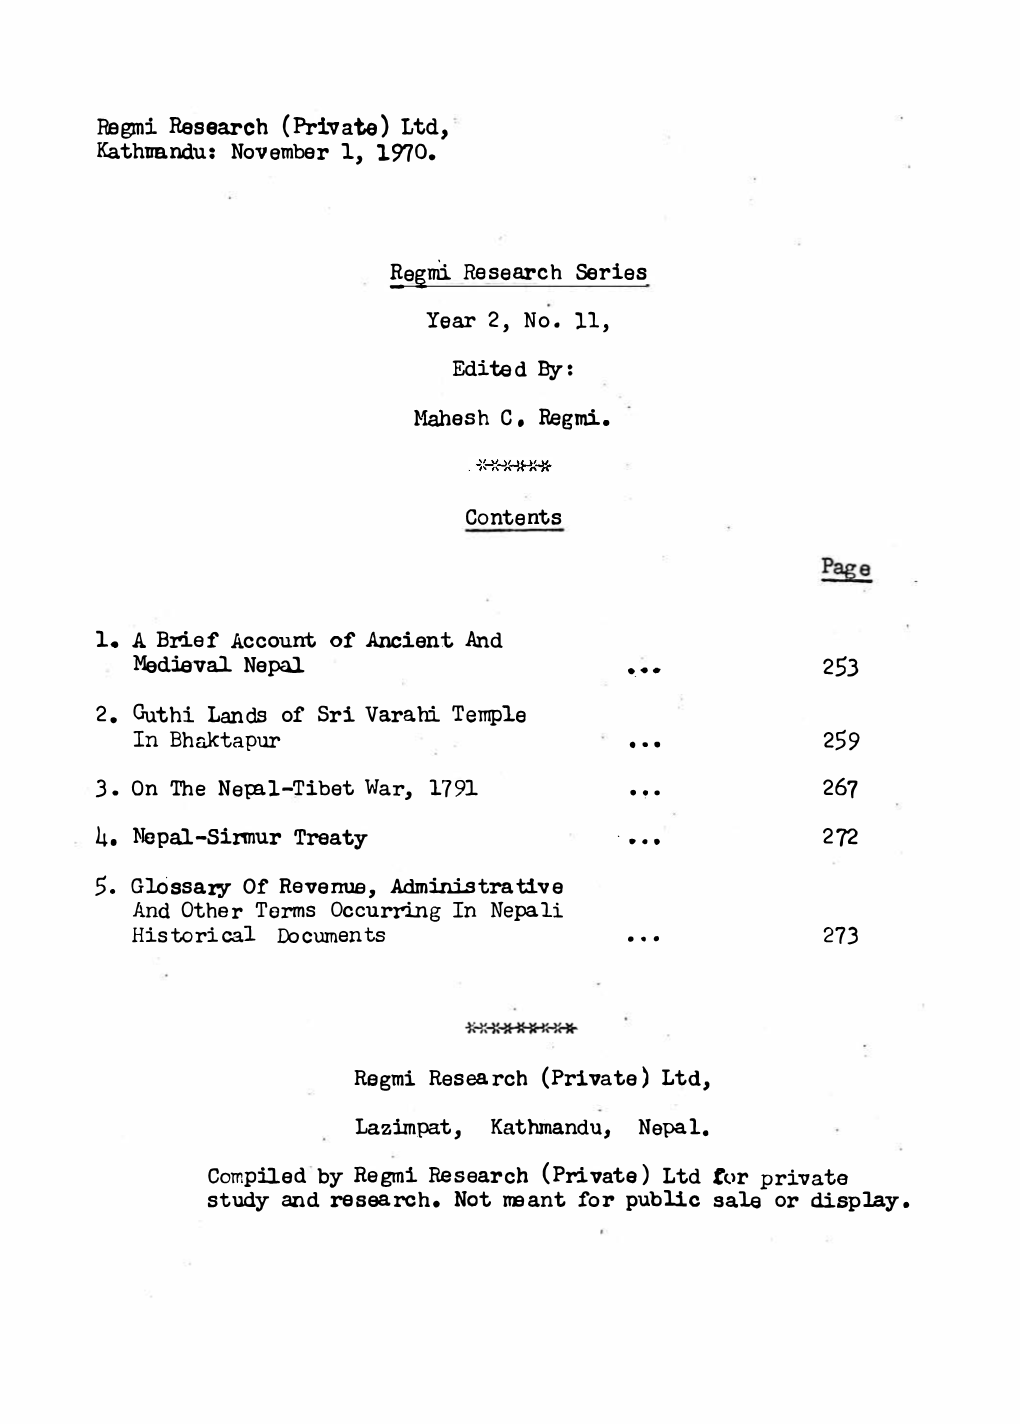 Regmi Research Series, Year 2, No. 11, Nov. 1, 1970